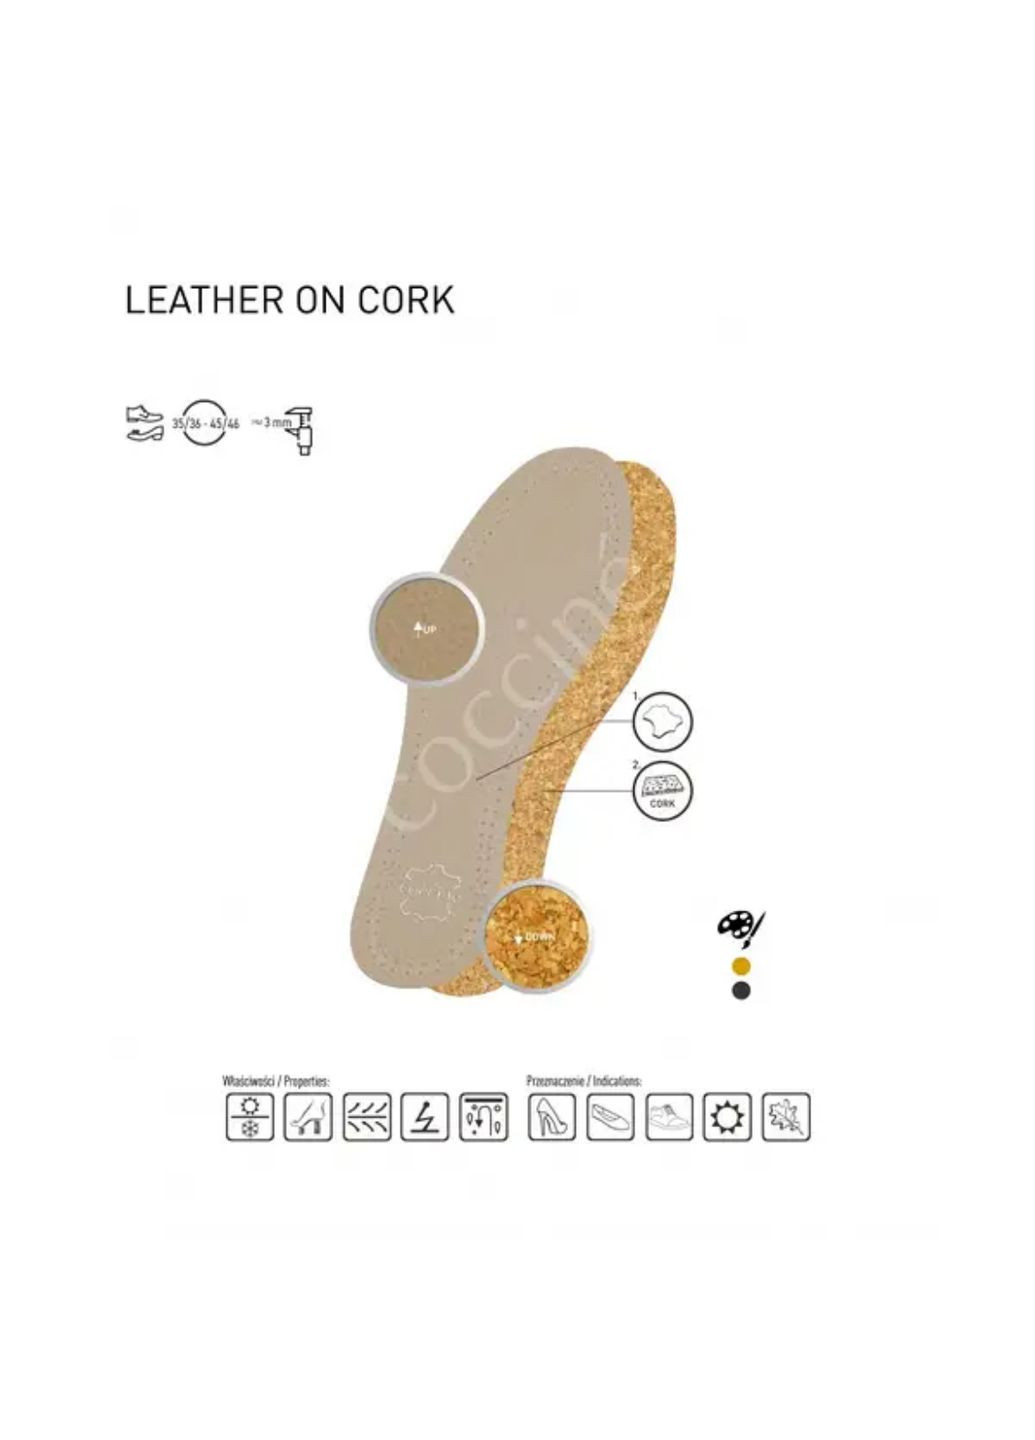 Стельки кожаные Coccine leather on cork (281421871)